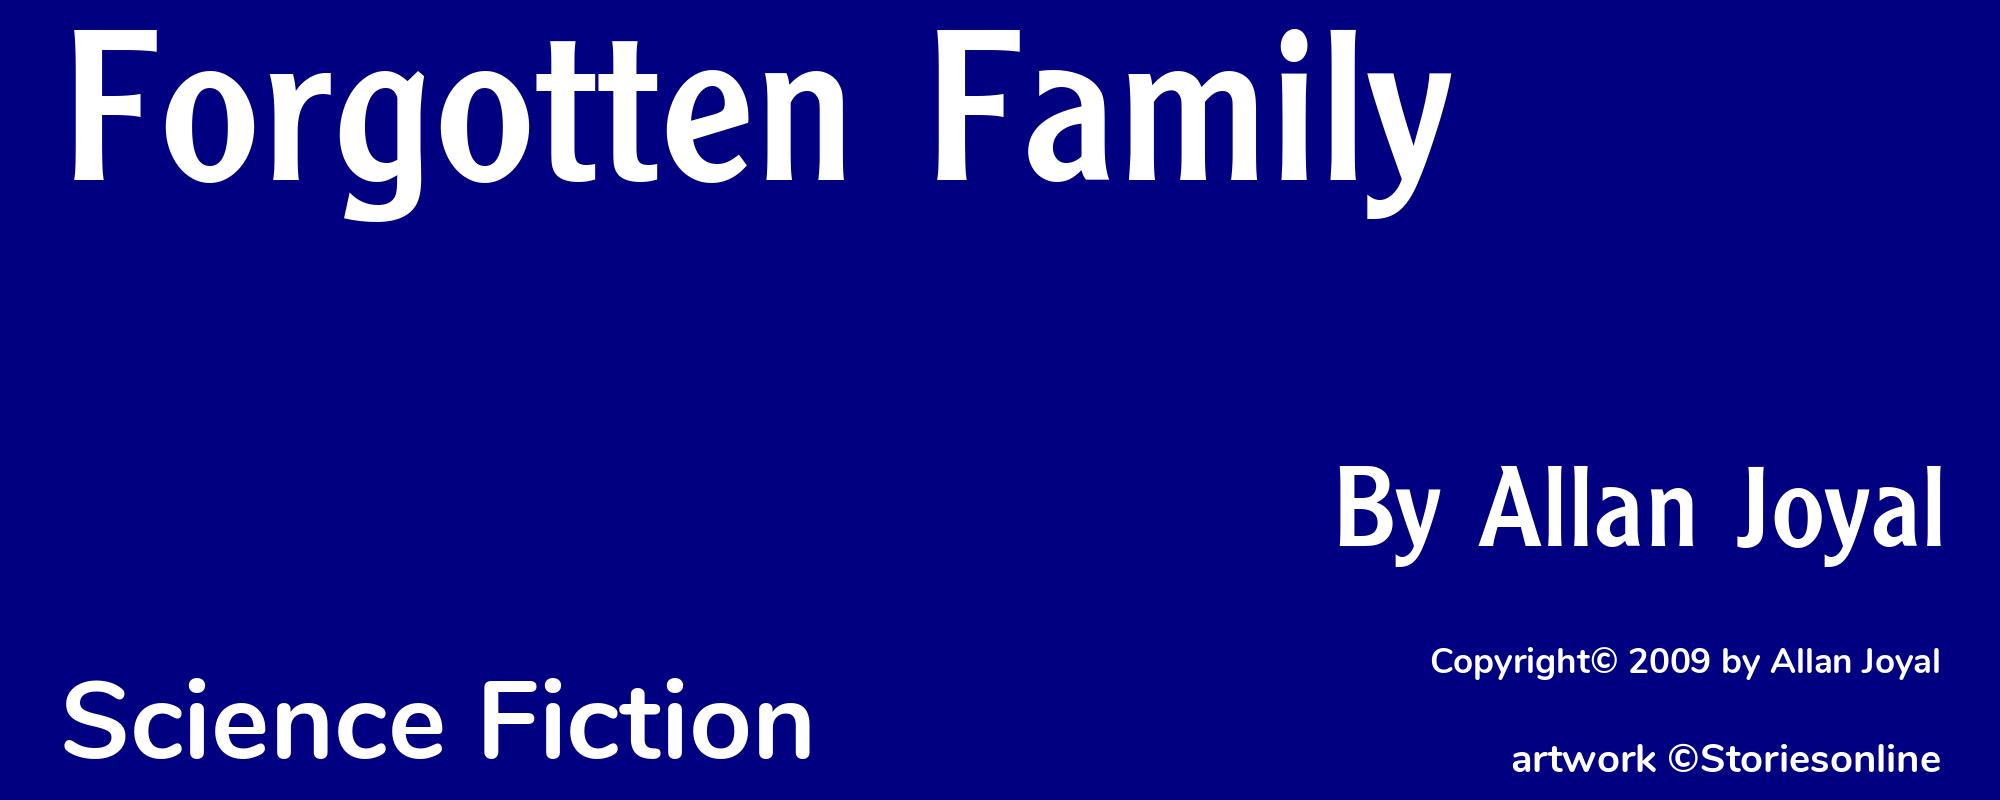 Forgotten Family - Cover